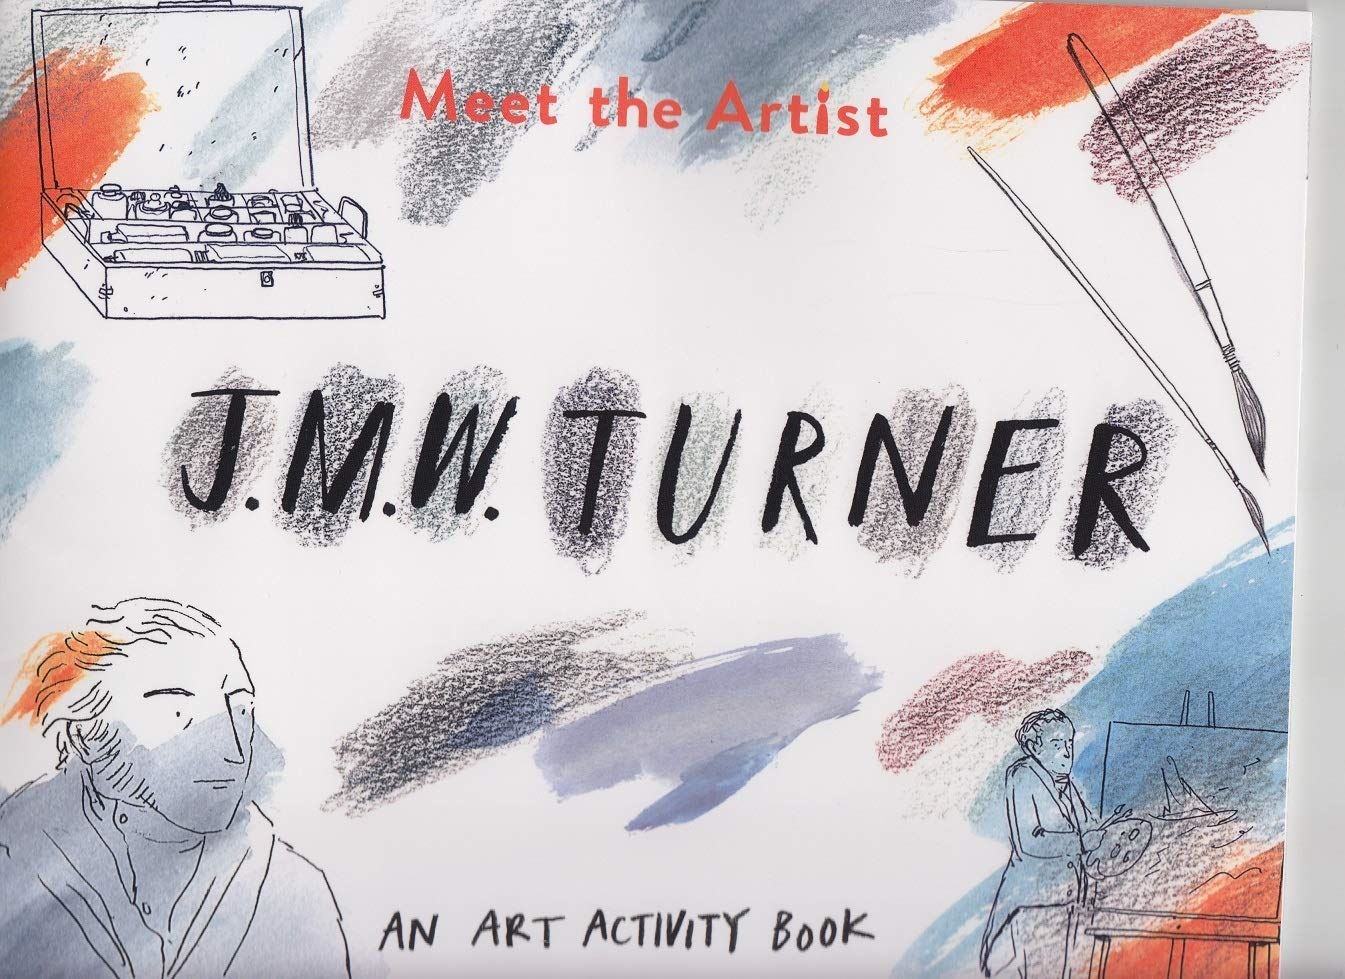 Meet The Artist: JMW Turner - Art Activity Book